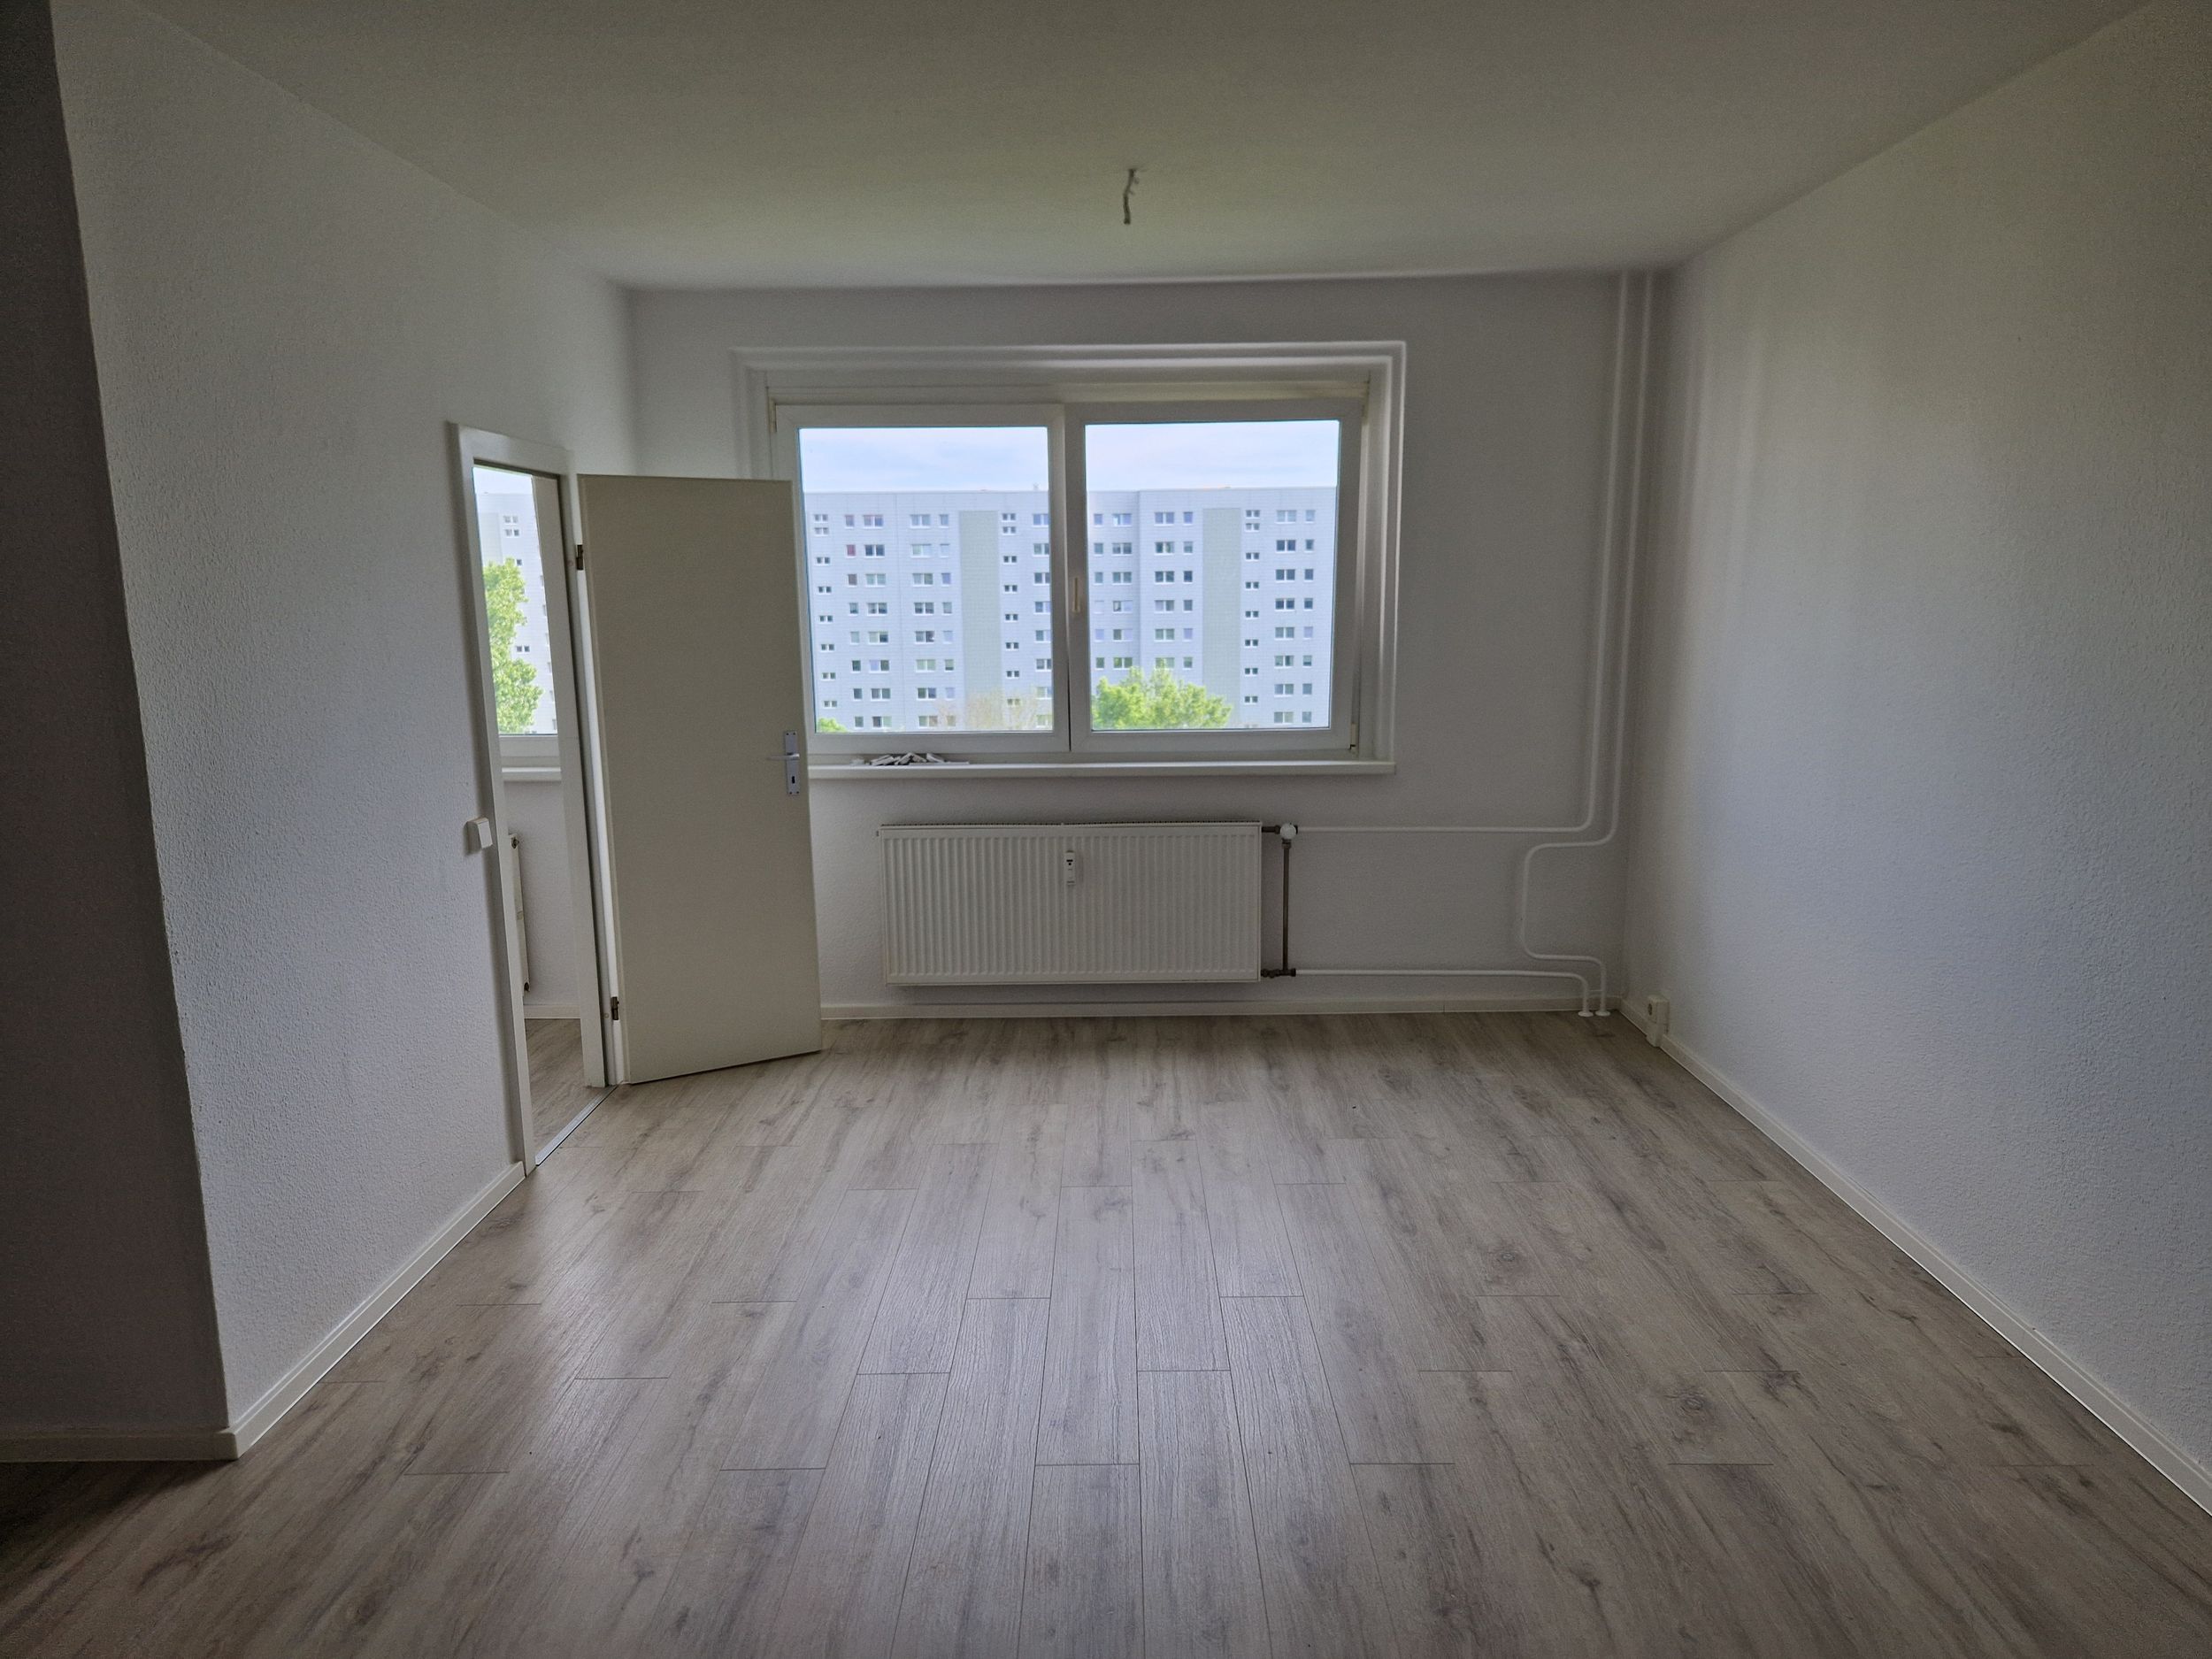 Super geräumiges Apartment mit Wannenbad, Balkon und Aufzug!